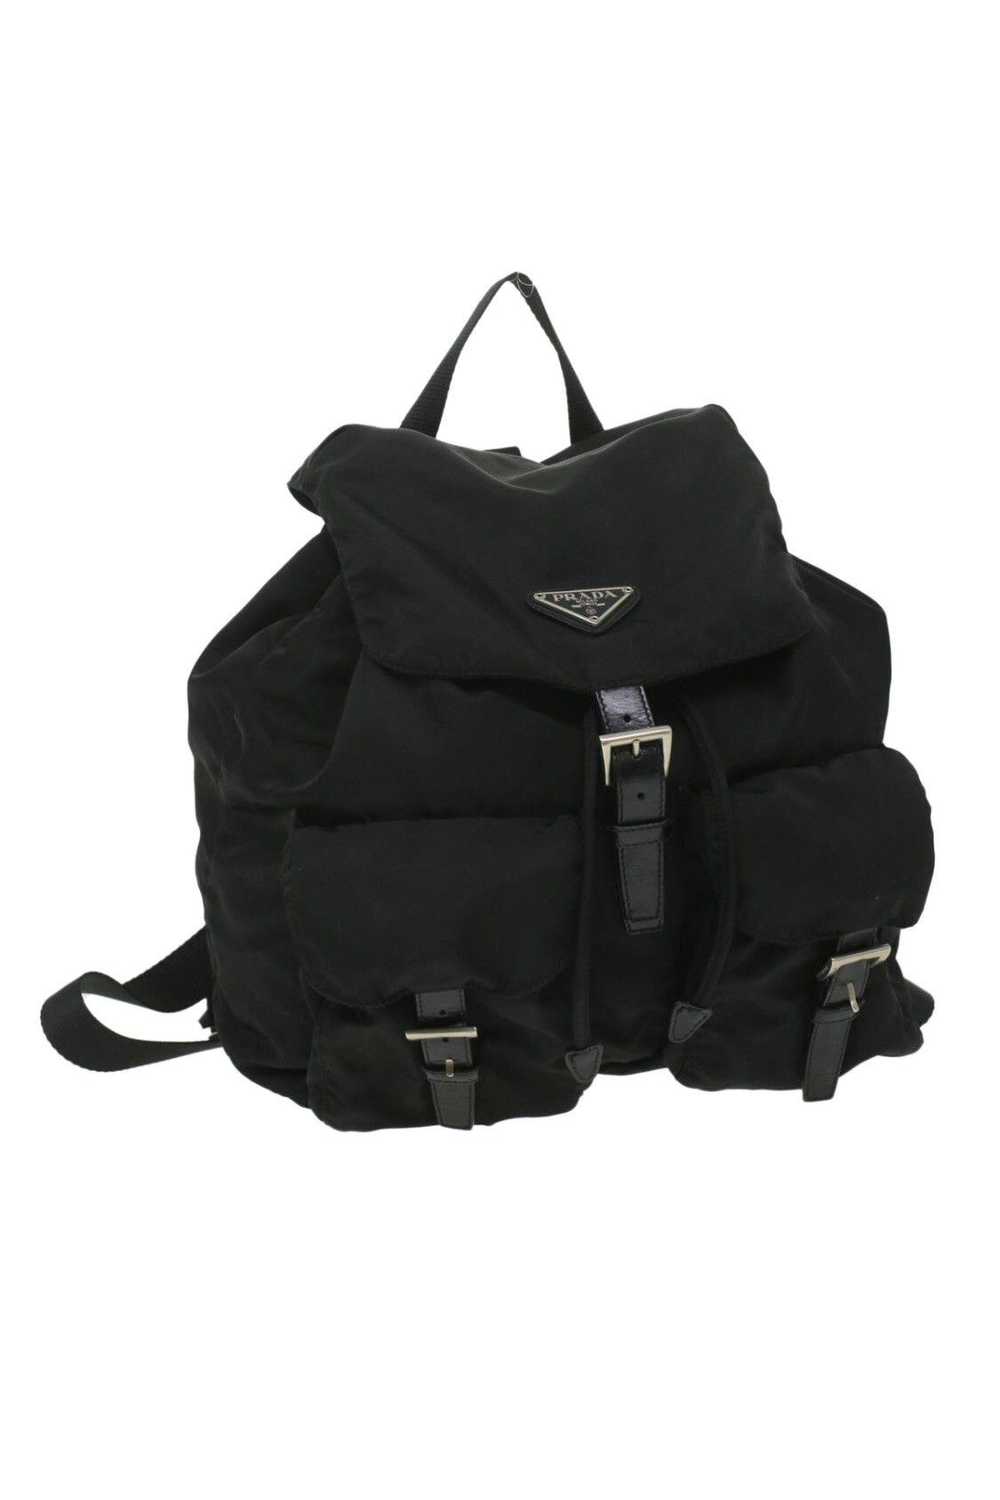 Prada Prada Backpack - image 1